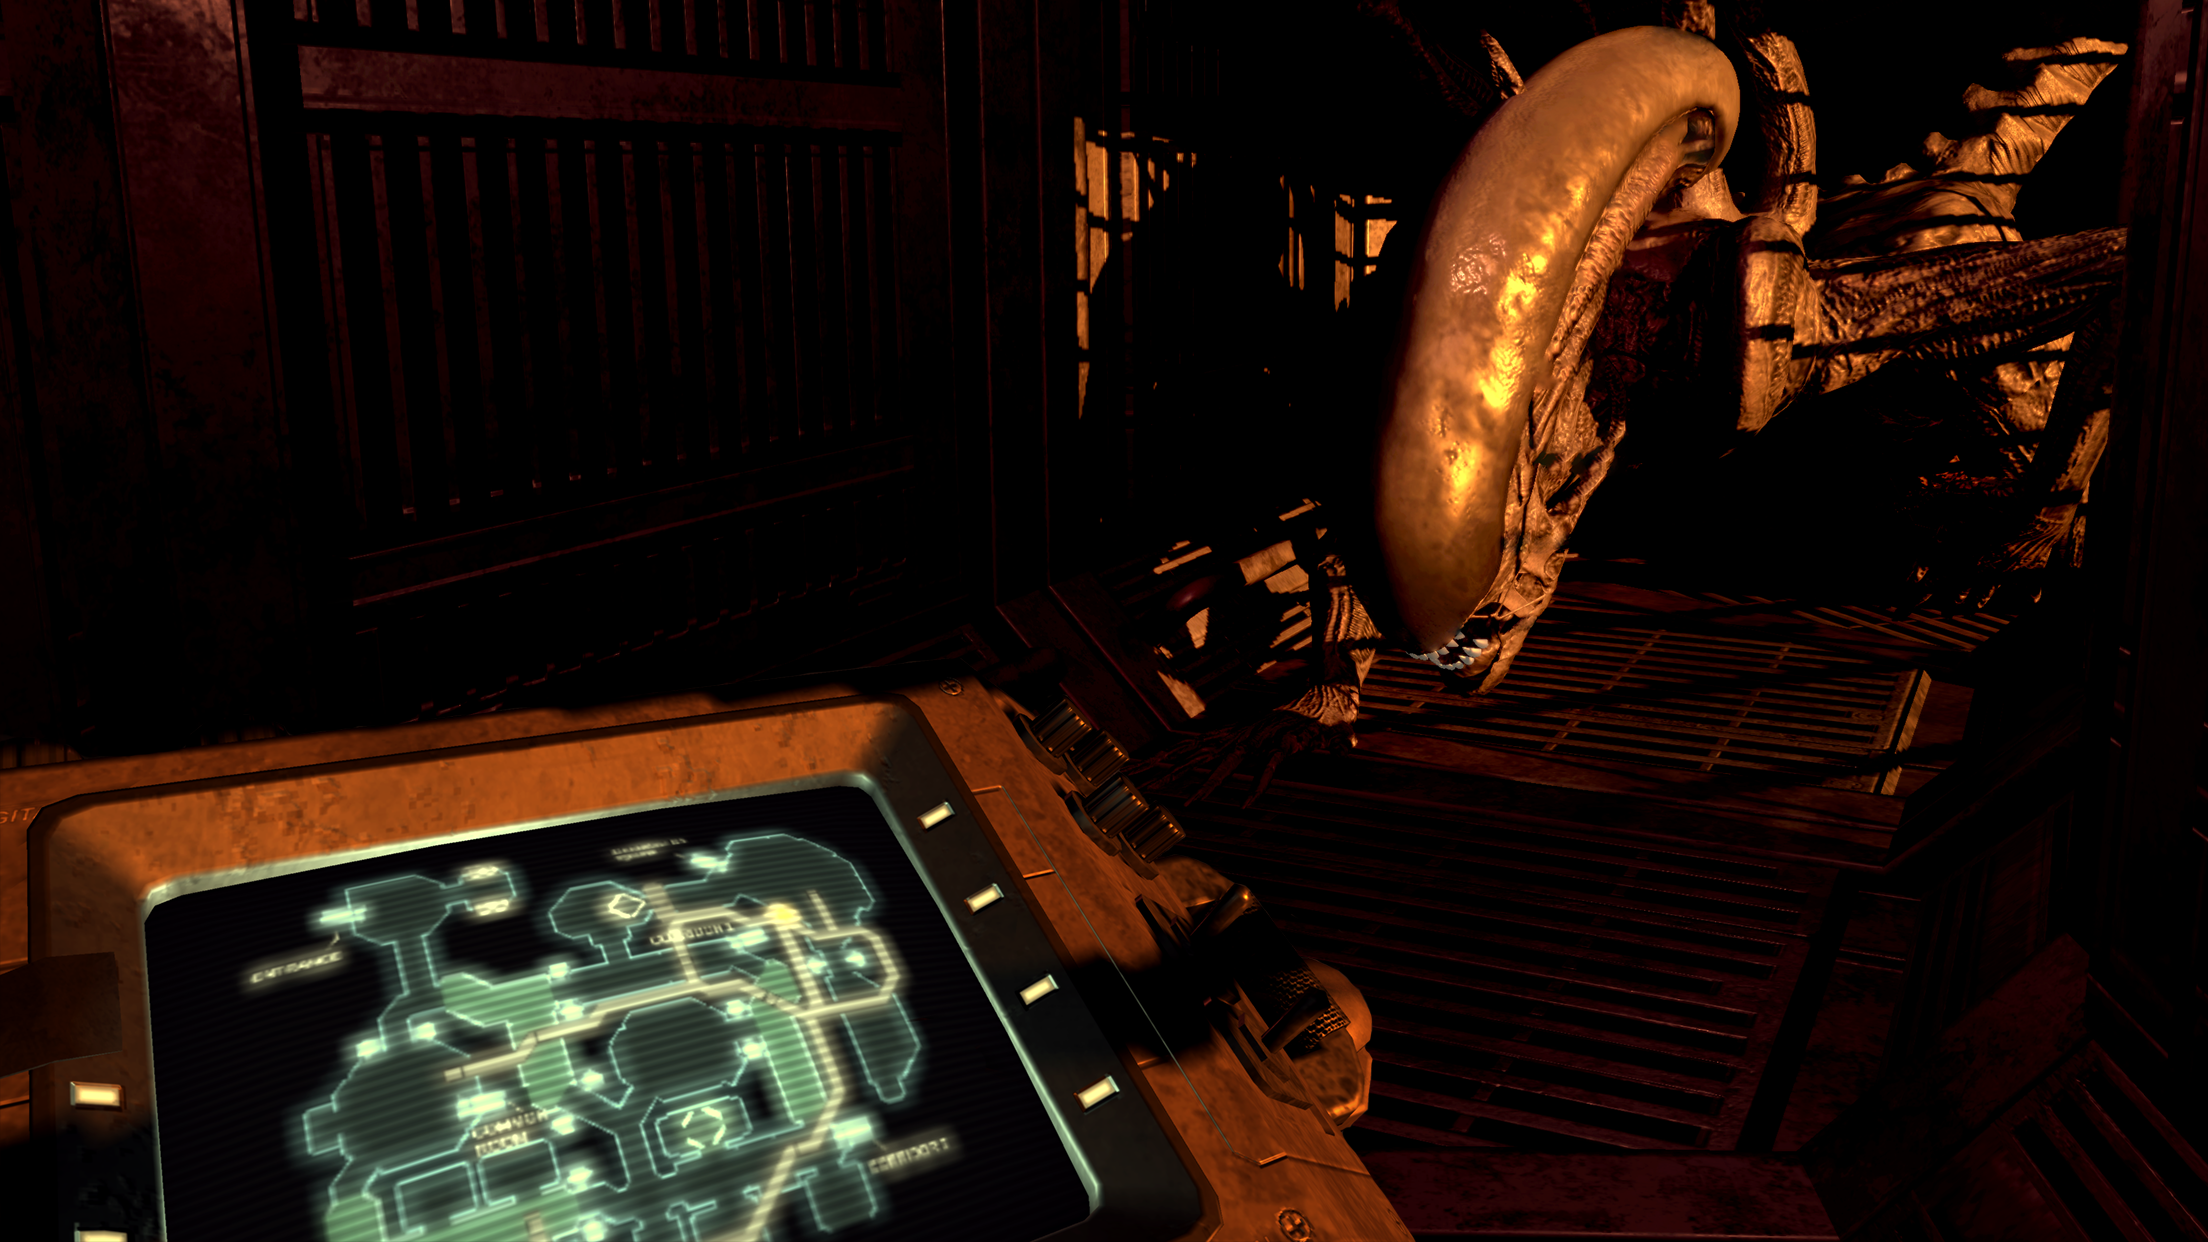 Alien: Blackout - Xenomorph approaching control panel in dark hallway